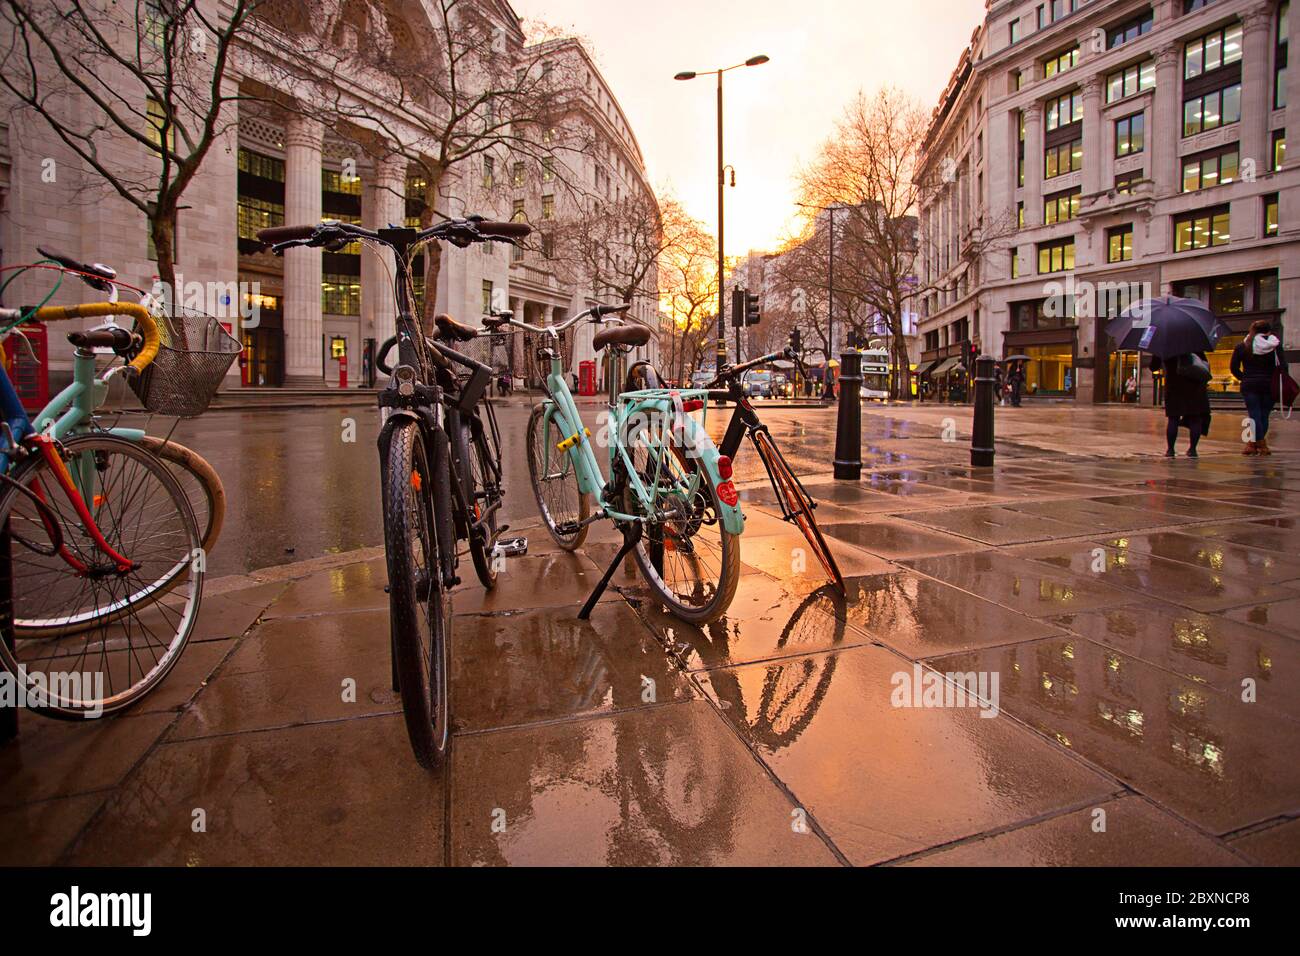 Wet rainy Kingsway, London, England Stock Photo